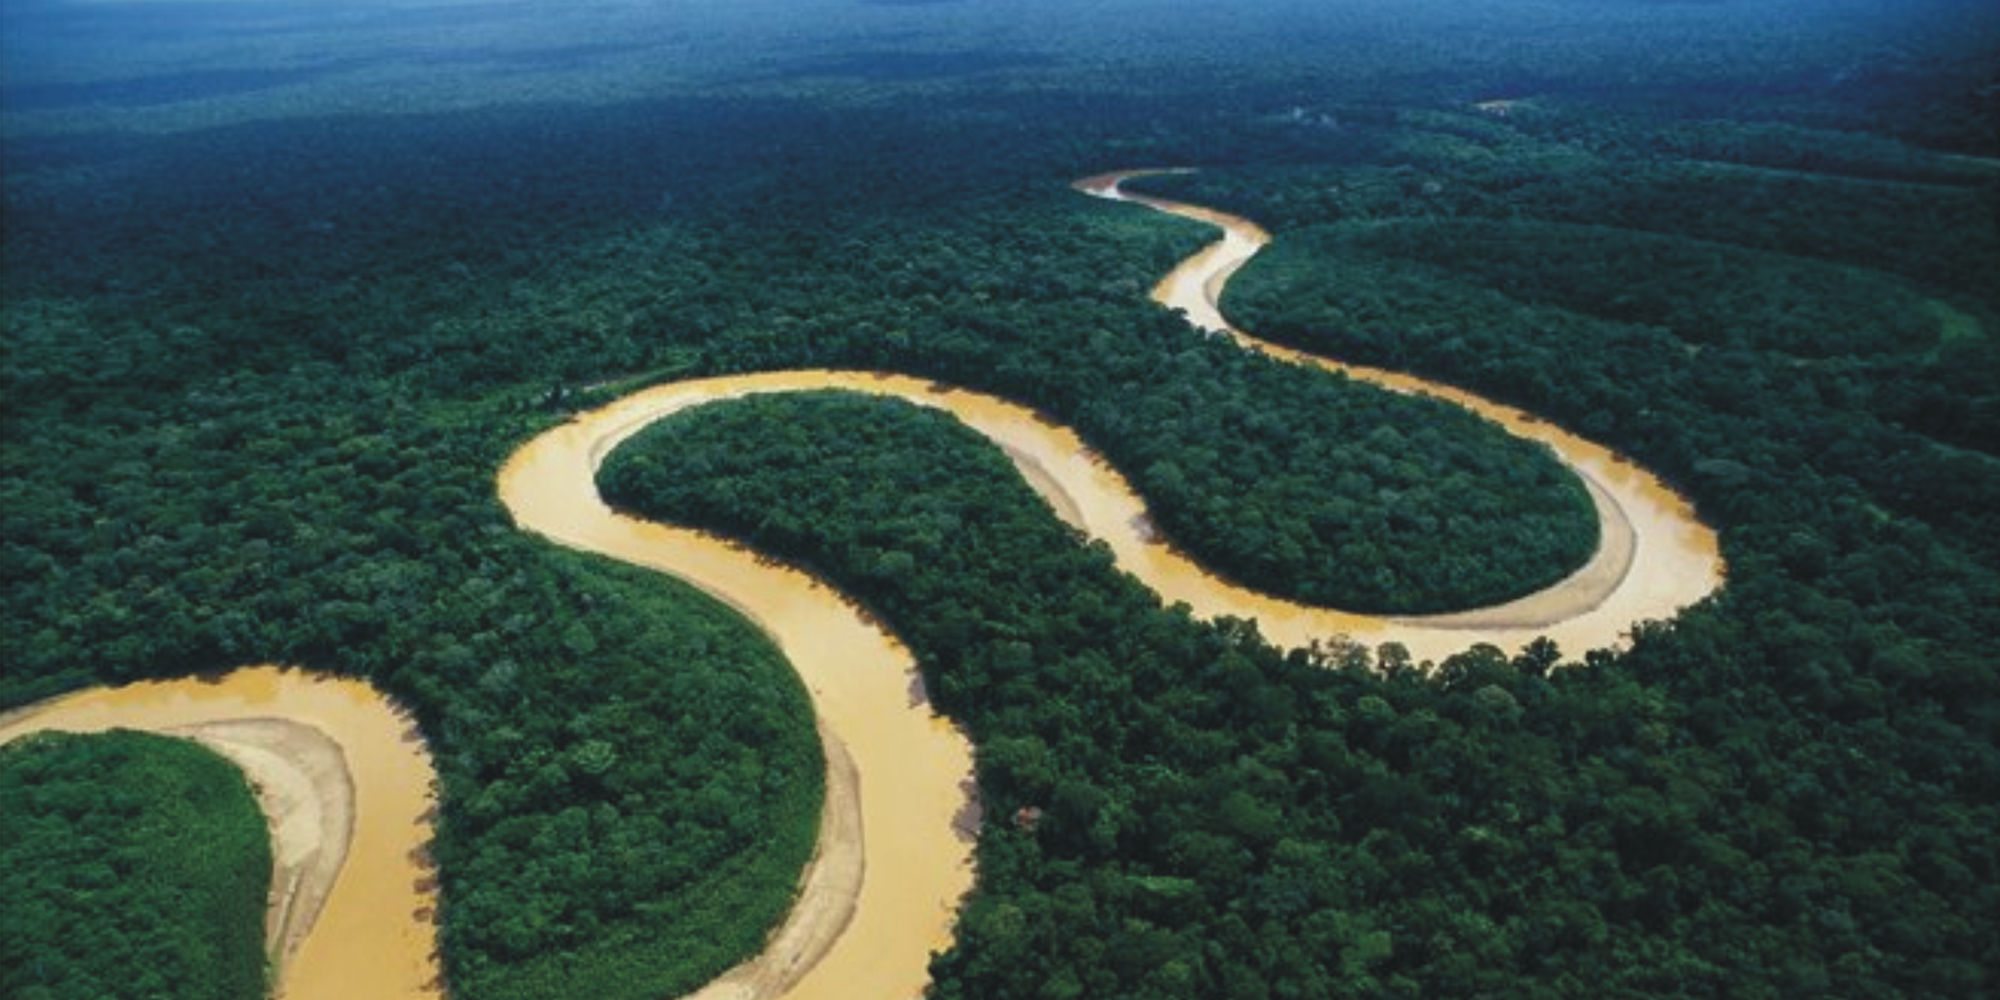 amazon rainforest tours from rio